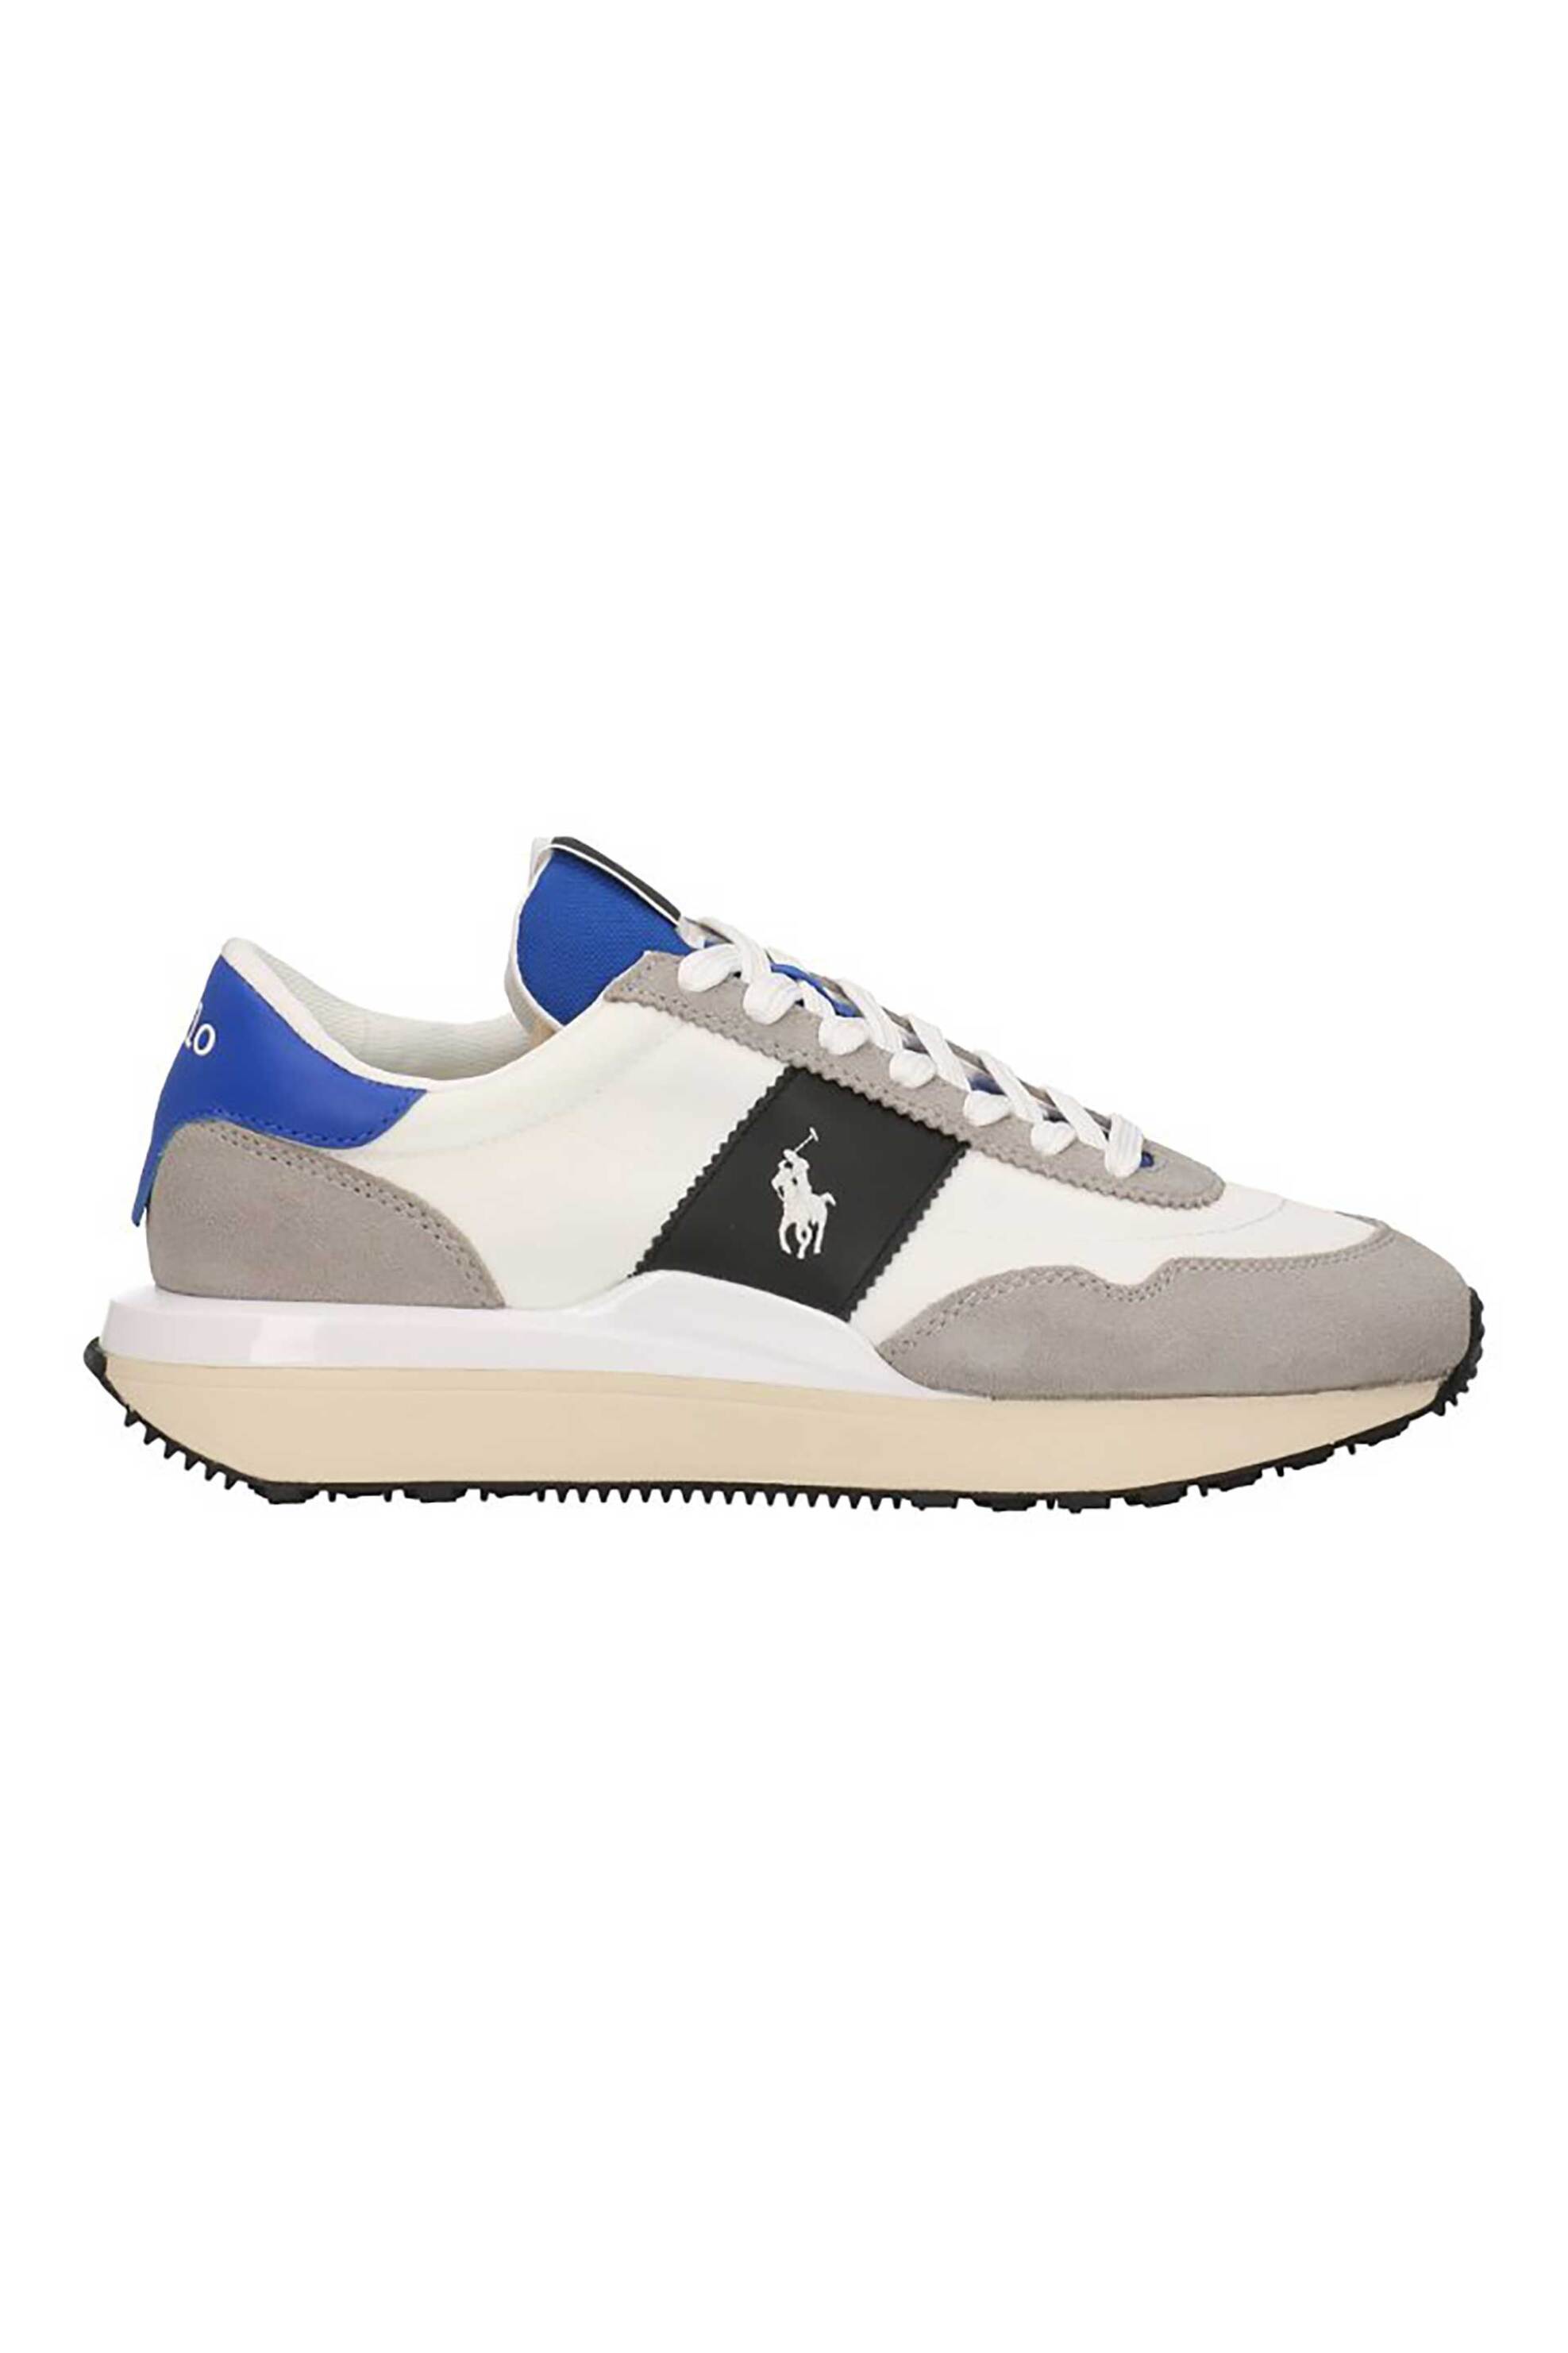 Ανδρική Μόδα > Ανδρικά Παπούτσια > Ανδρικά Sneakers Polo Ralph Lauren ανδρικά sneakers με contrast λεπτομέρειες και λογότυπο - 809923931002 Γκρι